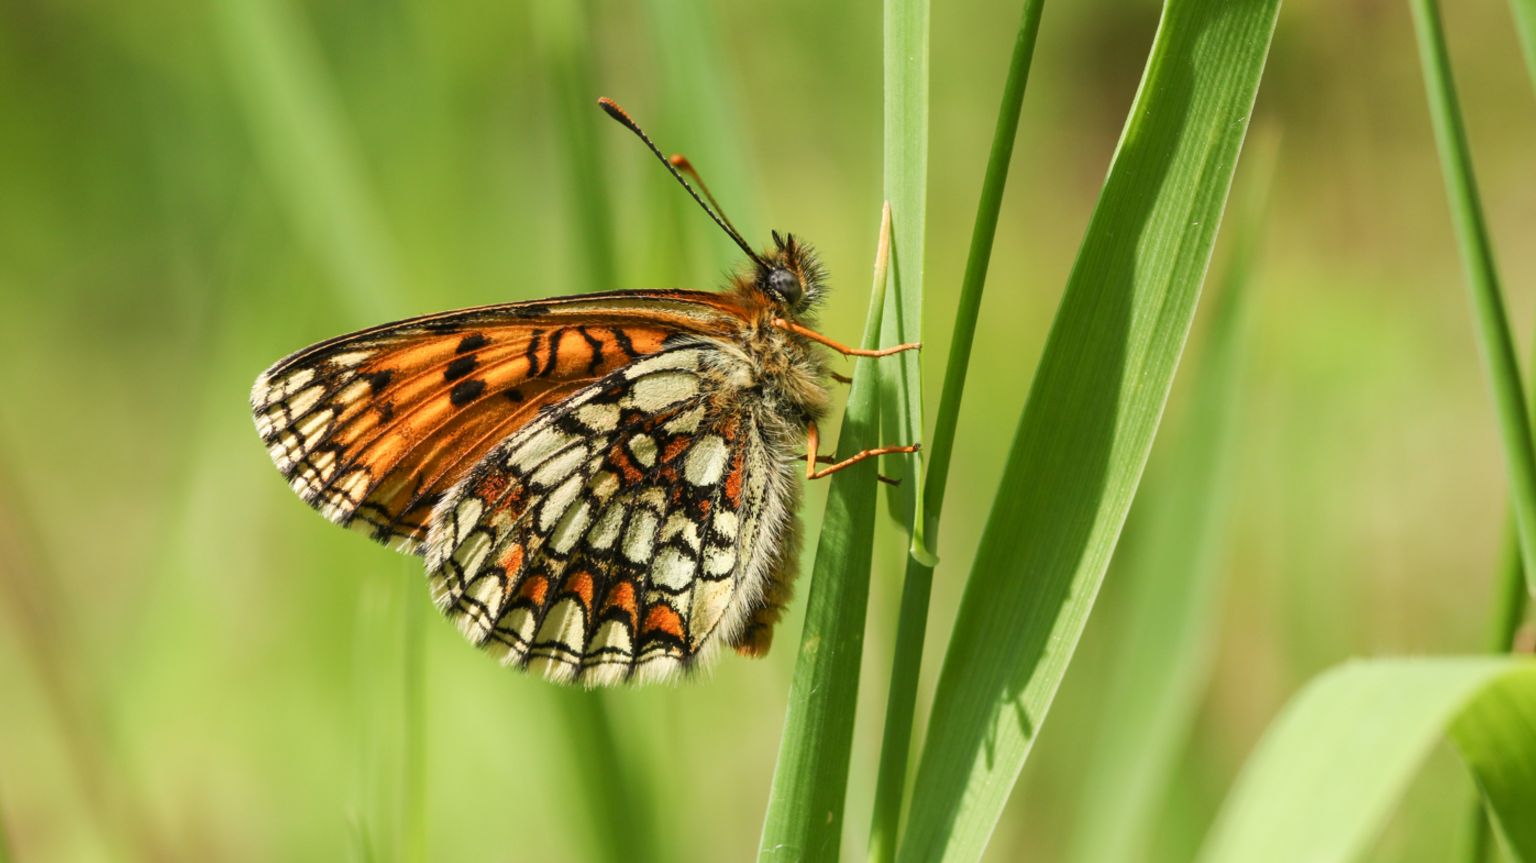 A heath fritillary butterfly on a blade of grass